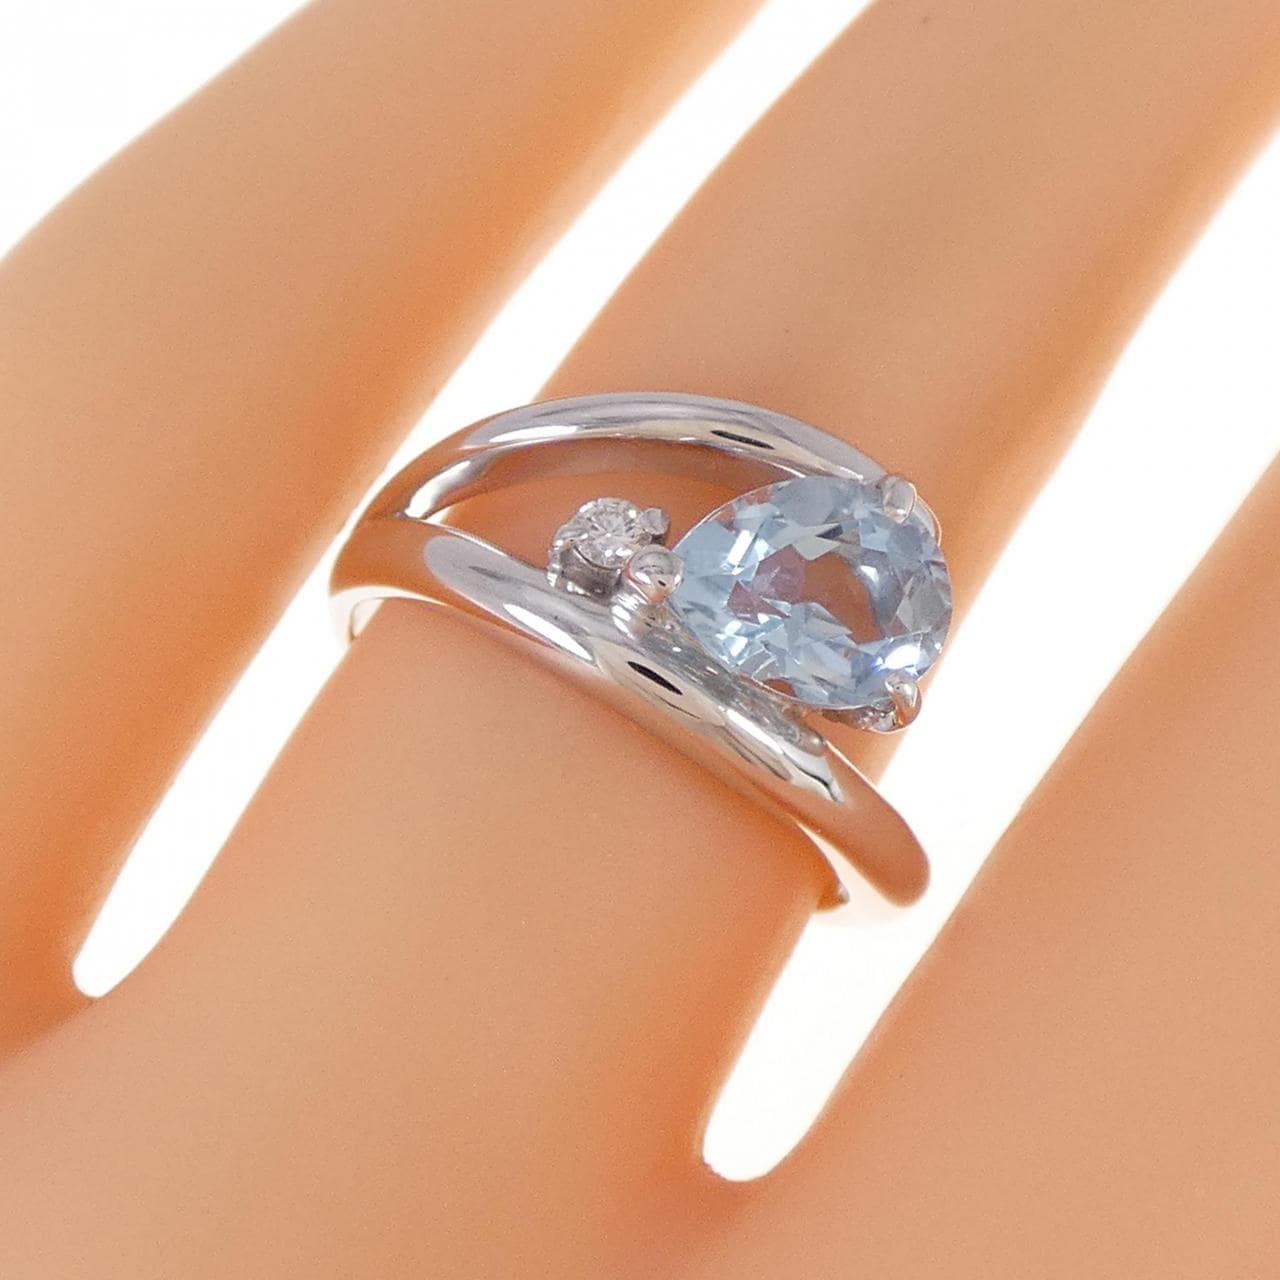 K18WG Aquamarine ring